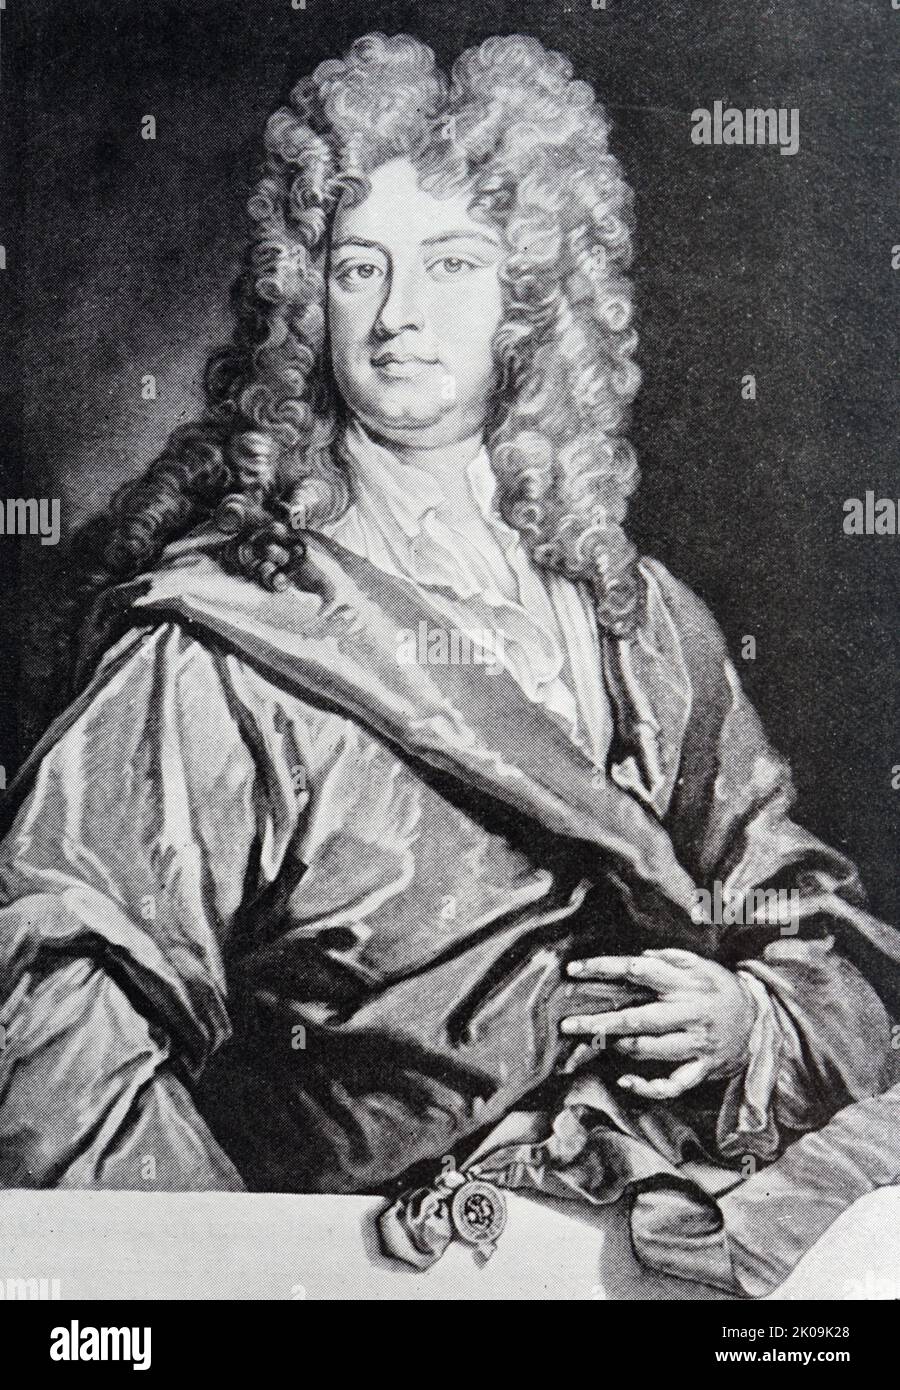 Charles Montagu, 1. Earl of Halifax KG PC PRS (16. April 1661 - 19. Mai 1715) war ein englischer Staatsmann und Dichter. Er war der Enkel des Earl of Manchester von 1. und wurde schließlich selbst adelt, zuerst als Baron Halifax im Jahr 1700 und später als Earl of Halifax im Jahr 1714. Stockfoto